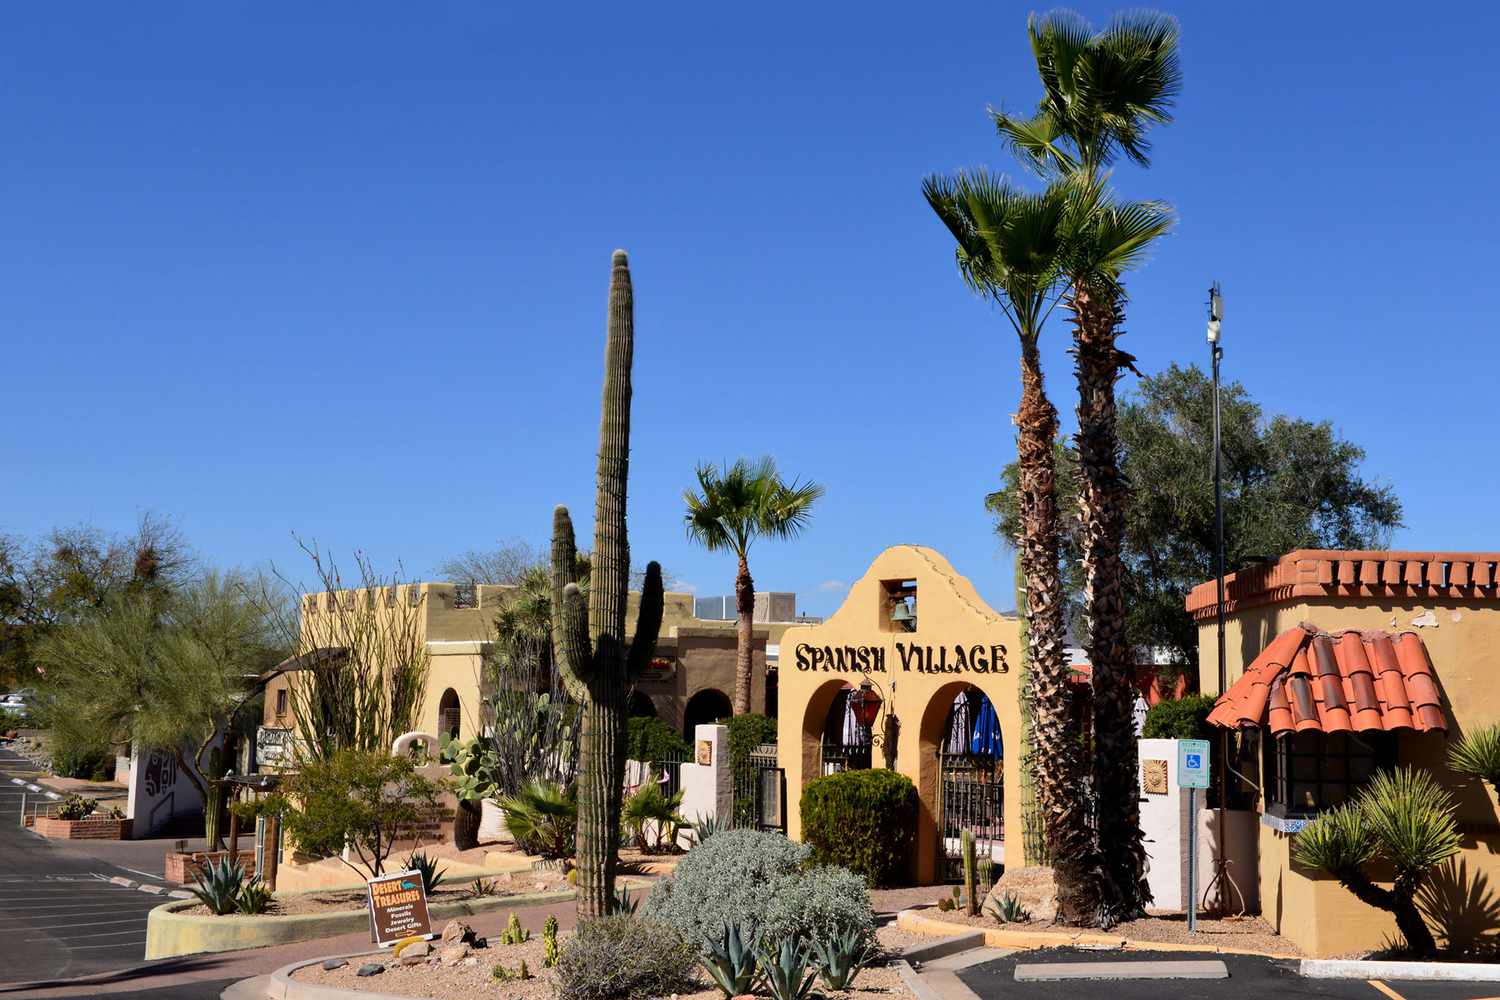 Entrée du village espagnol, une zone commerçante à la recherche d'une période à Carefree, Arizona, avec des cactus locaux et d'autres végétaux.